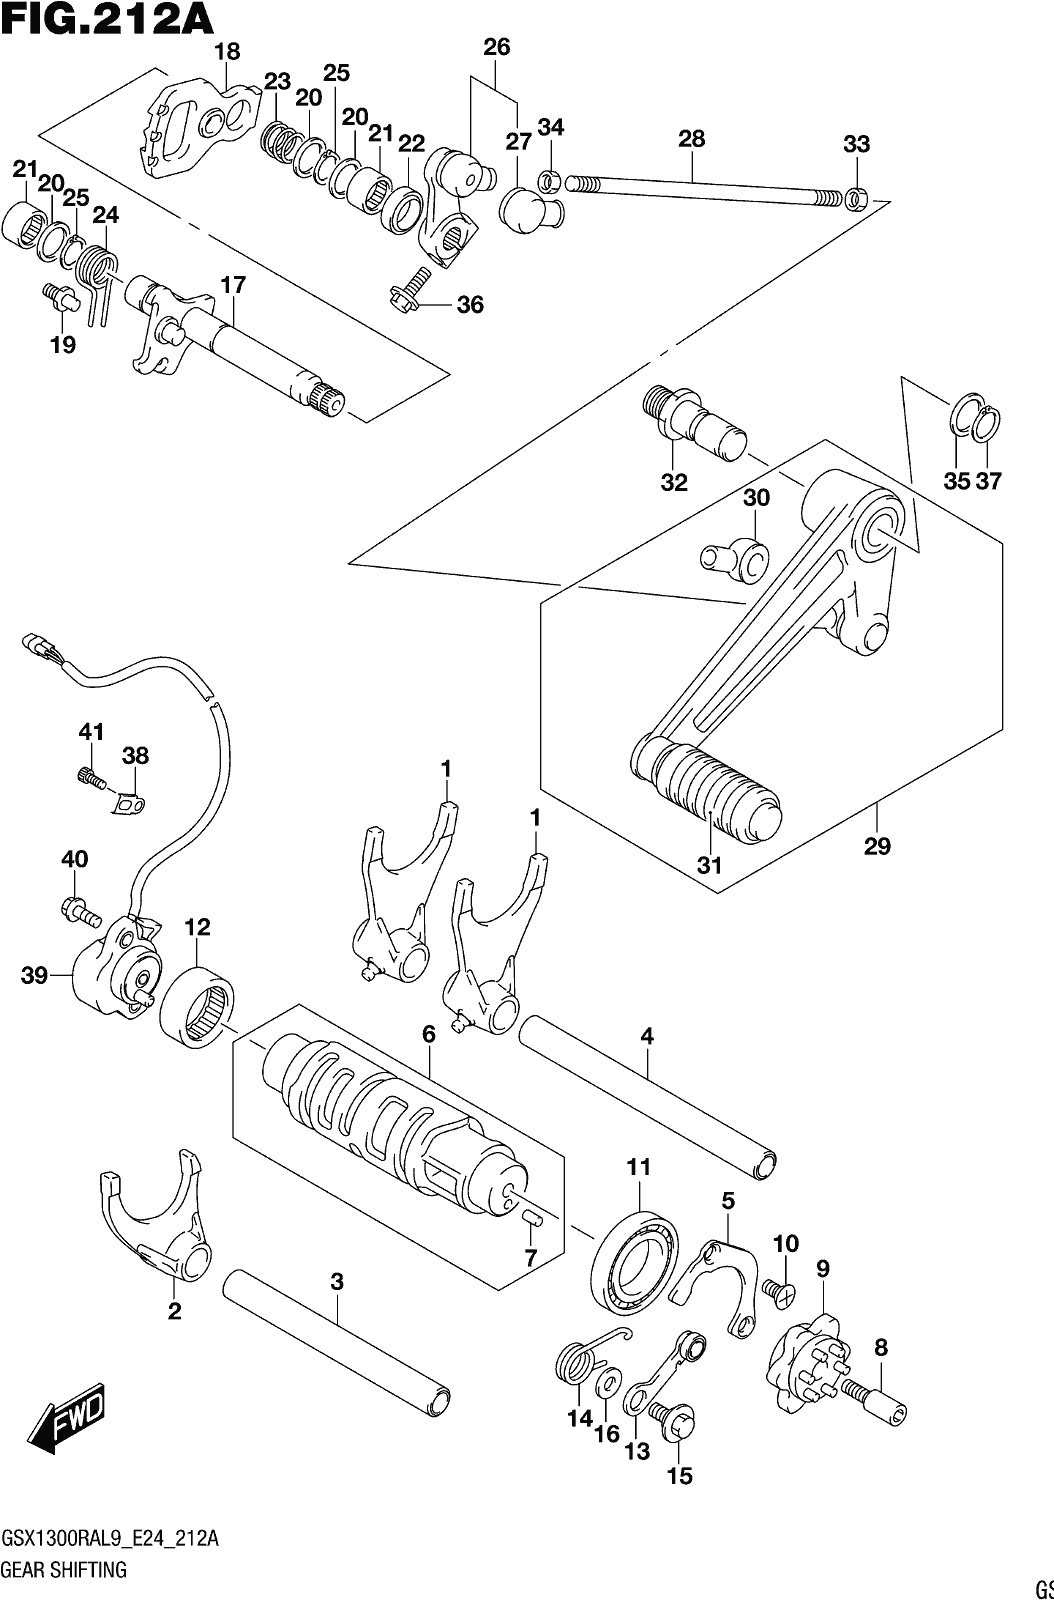 Fig.212a Gear Shifting